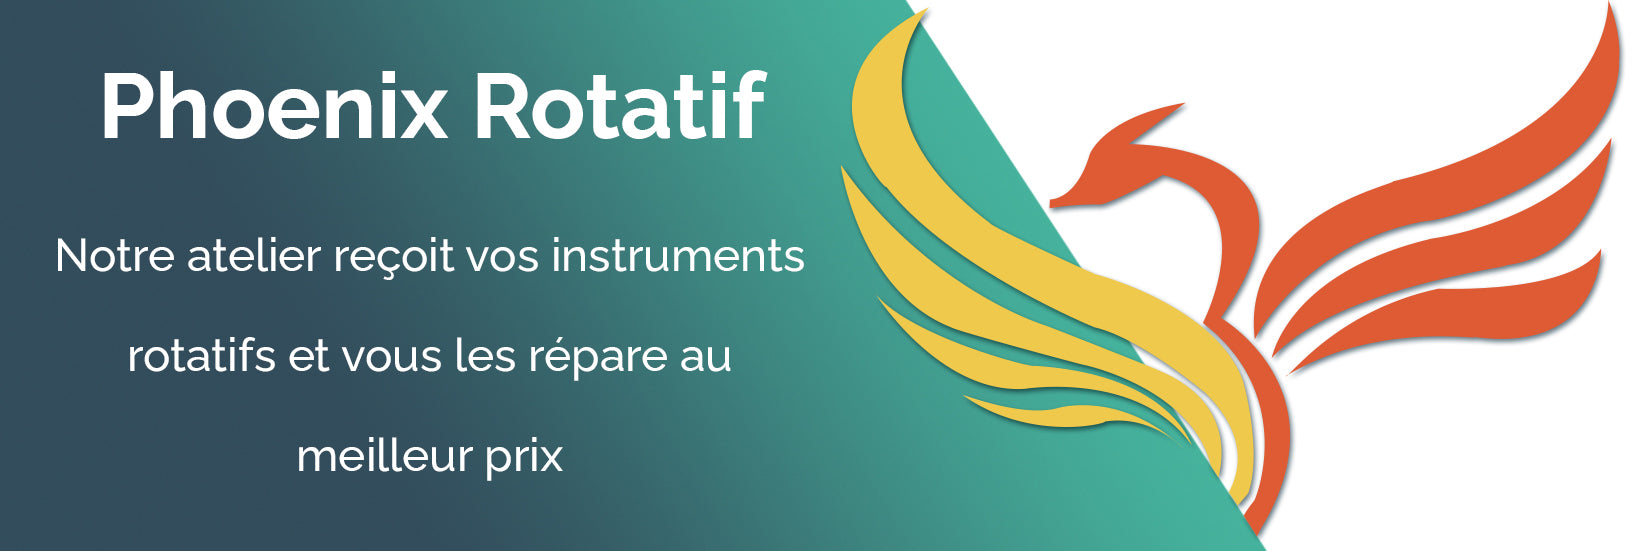 oofti.fr vous propose Phoenix Rotatif , un service de réparation et d'entretien de vos rotatifs. Devis gratuits. 